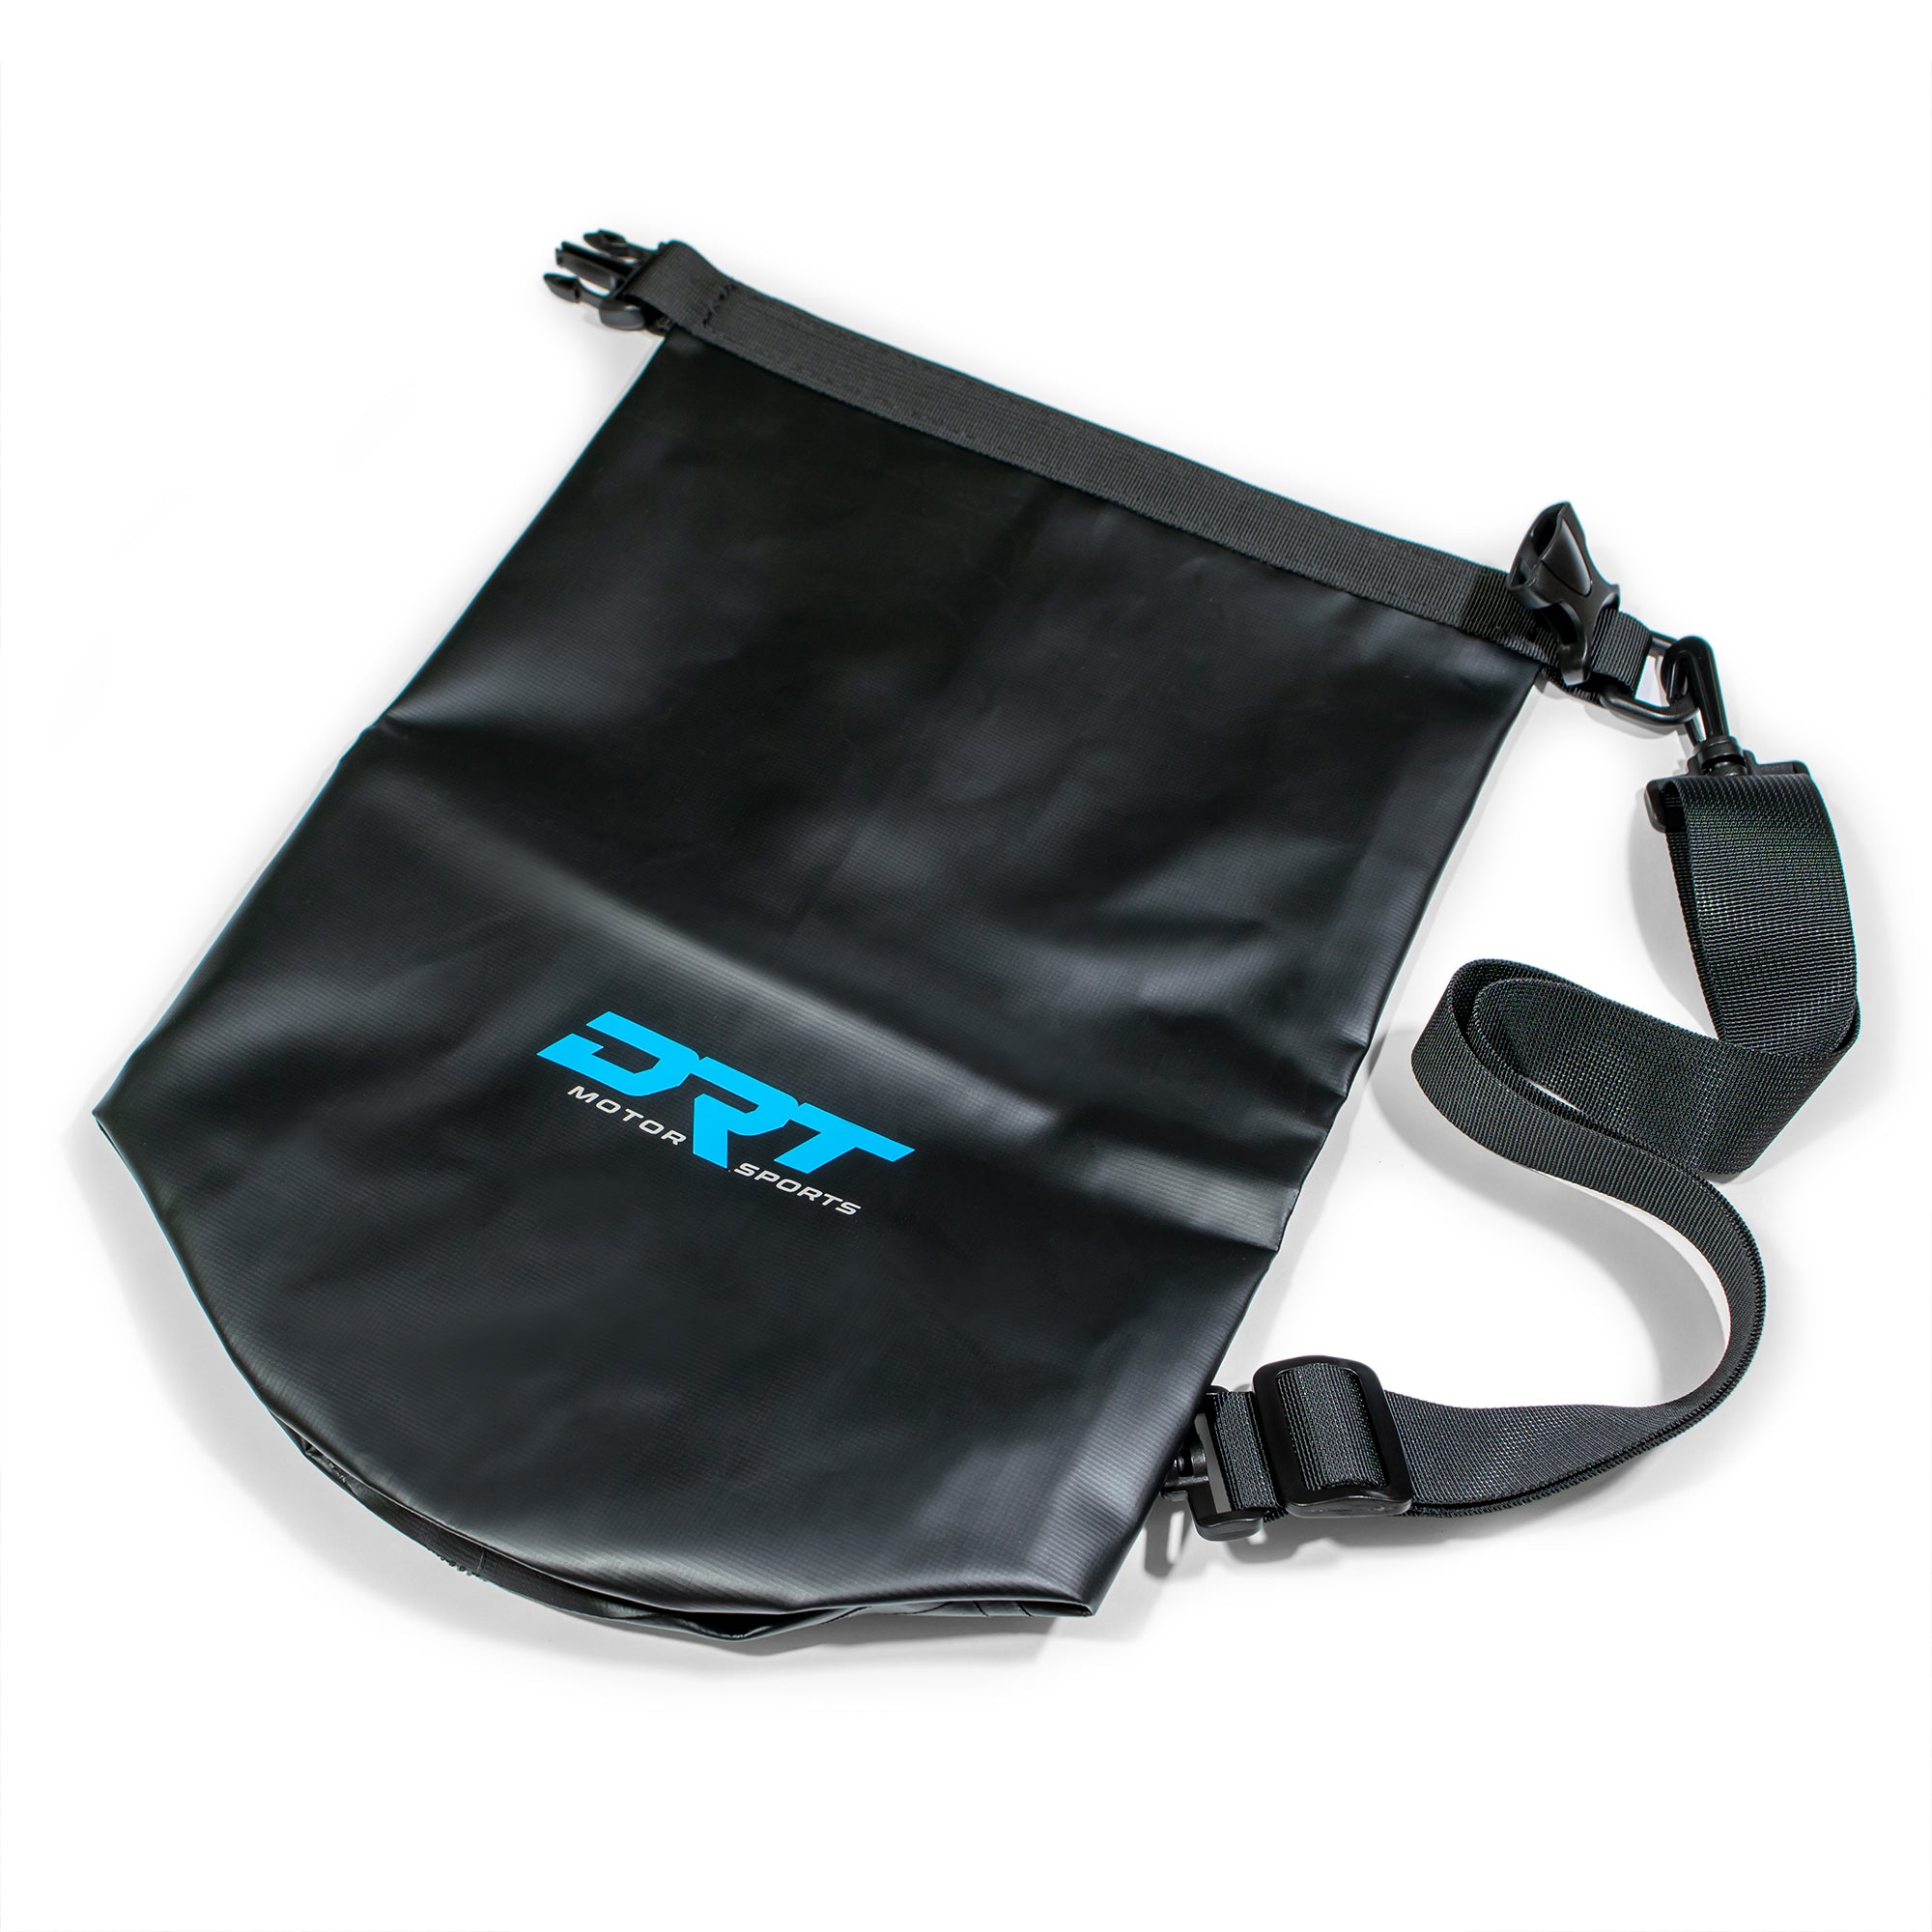 Naturehike TPU Waterproof Outdoor Bag Backpack - Large